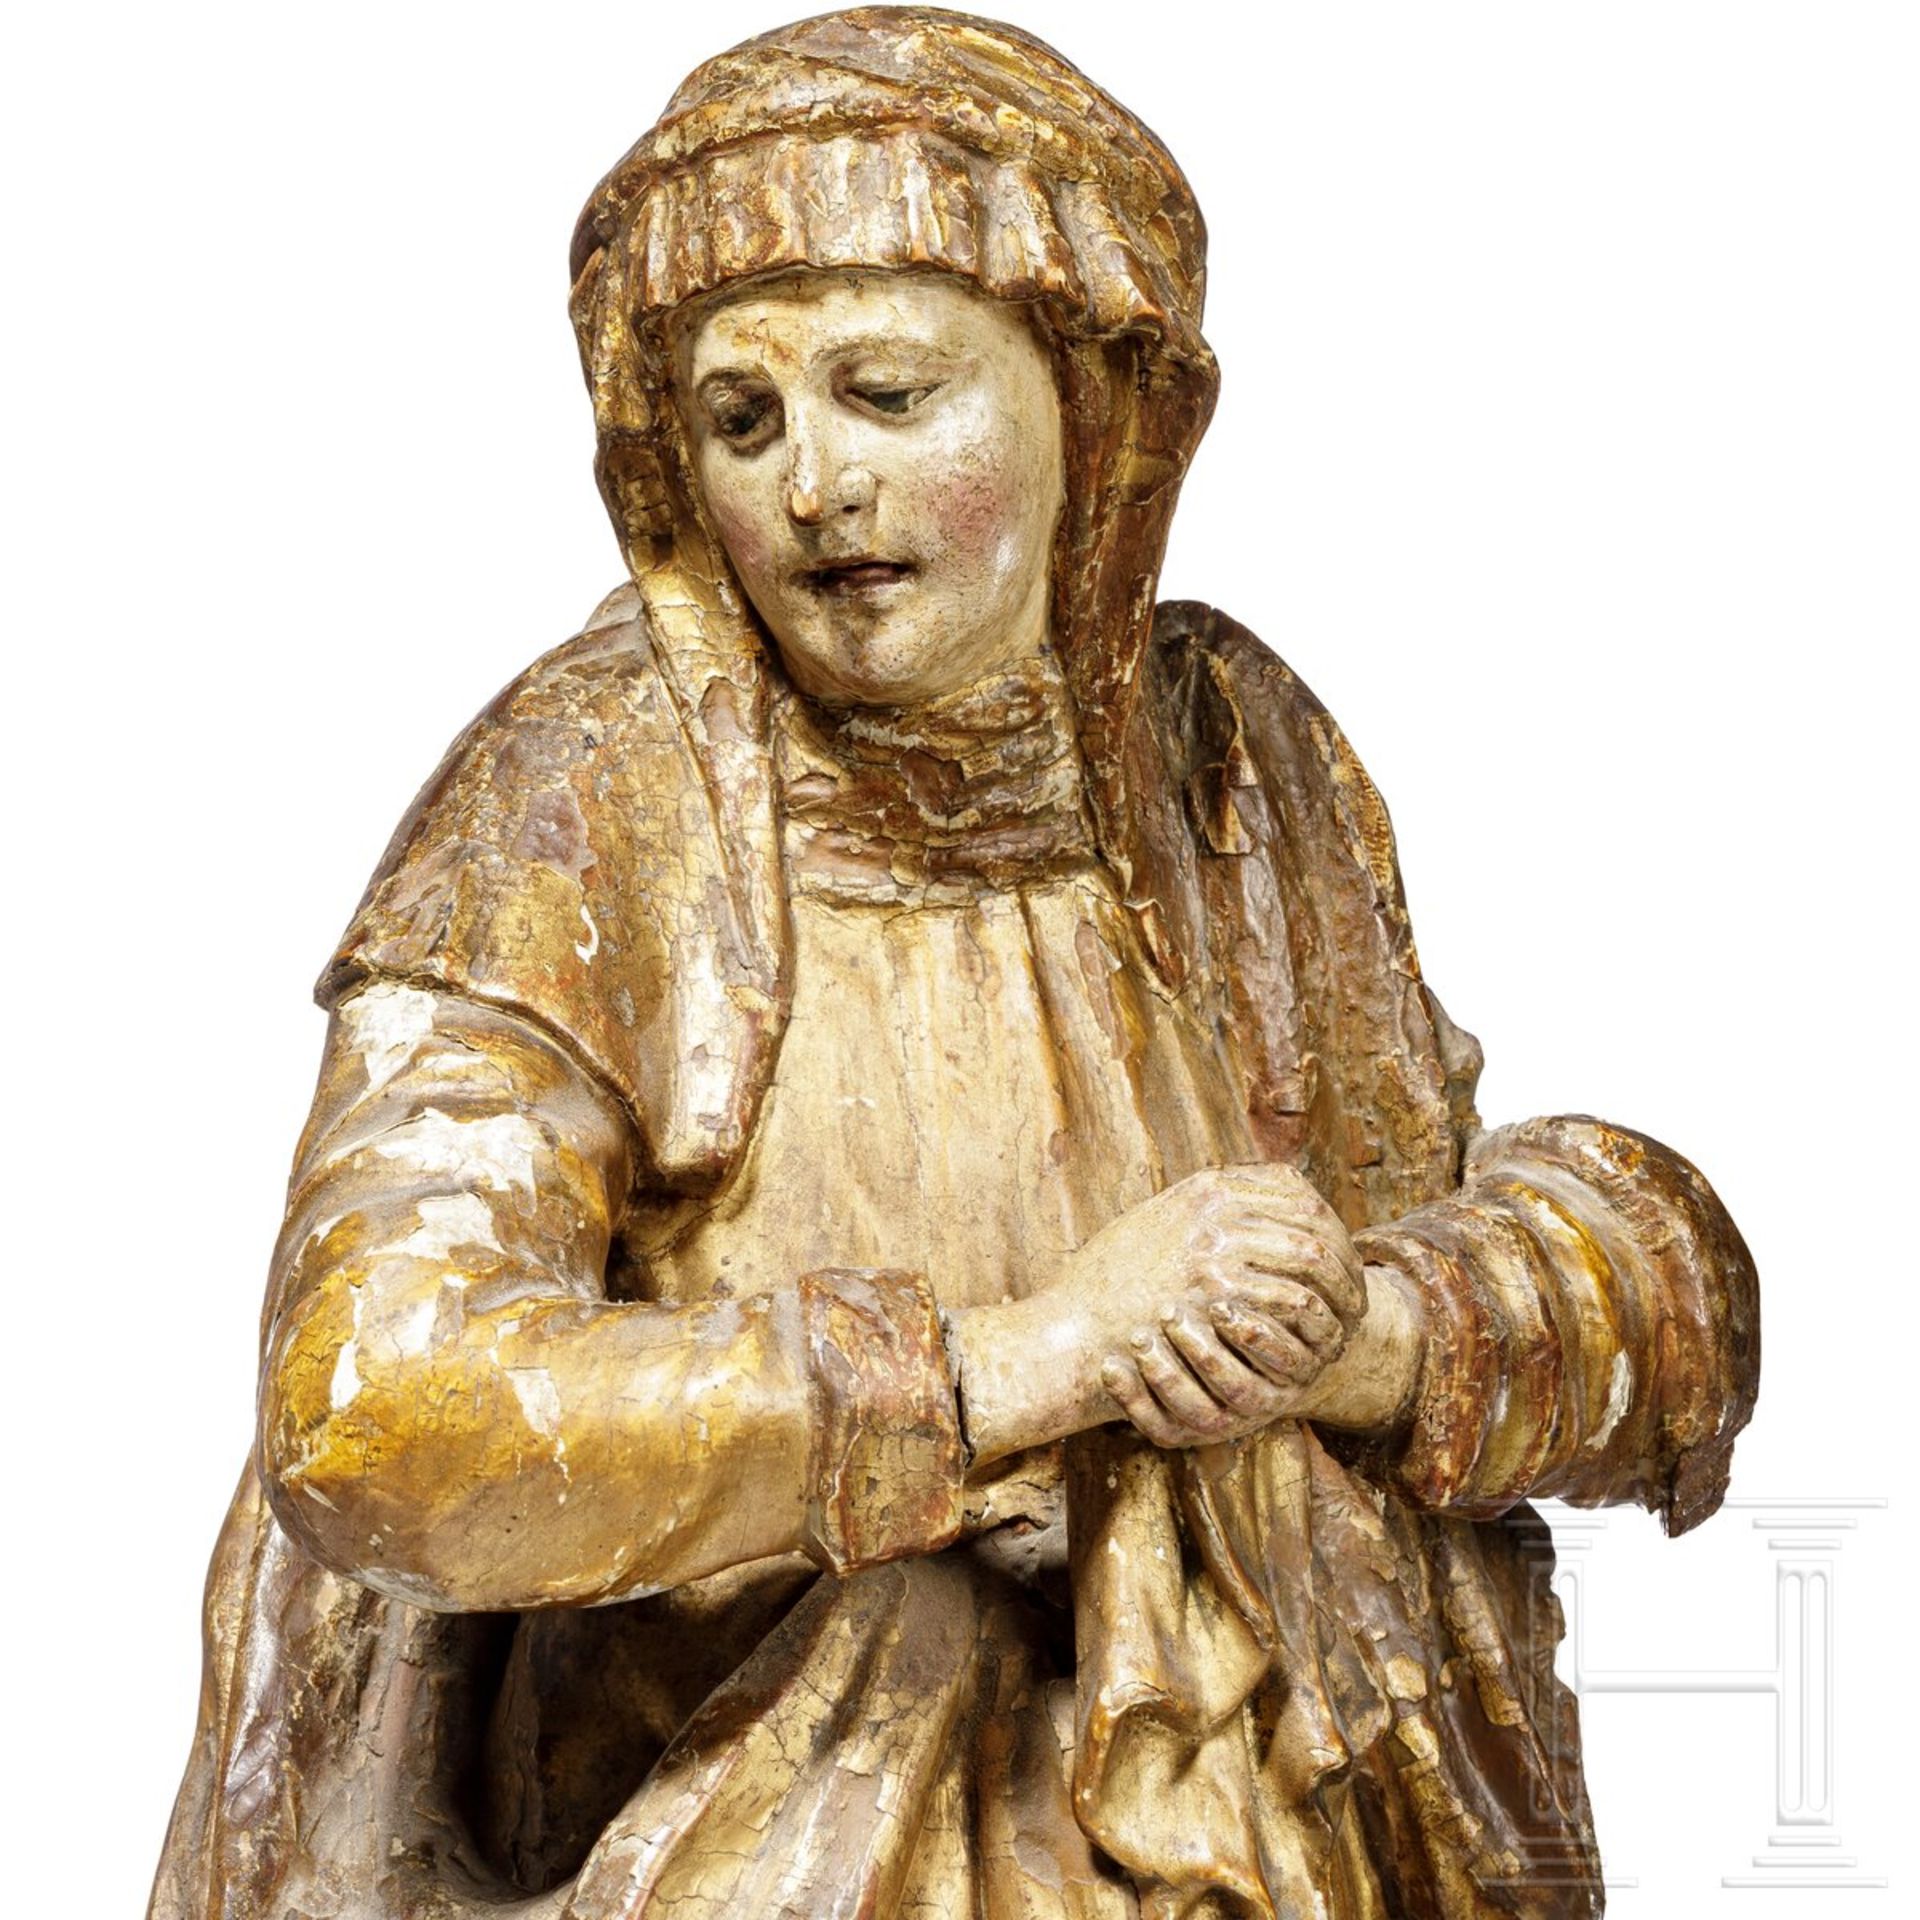 Trauernde Madonna, norddeutsch/flämisch, um 1600 - Image 2 of 4